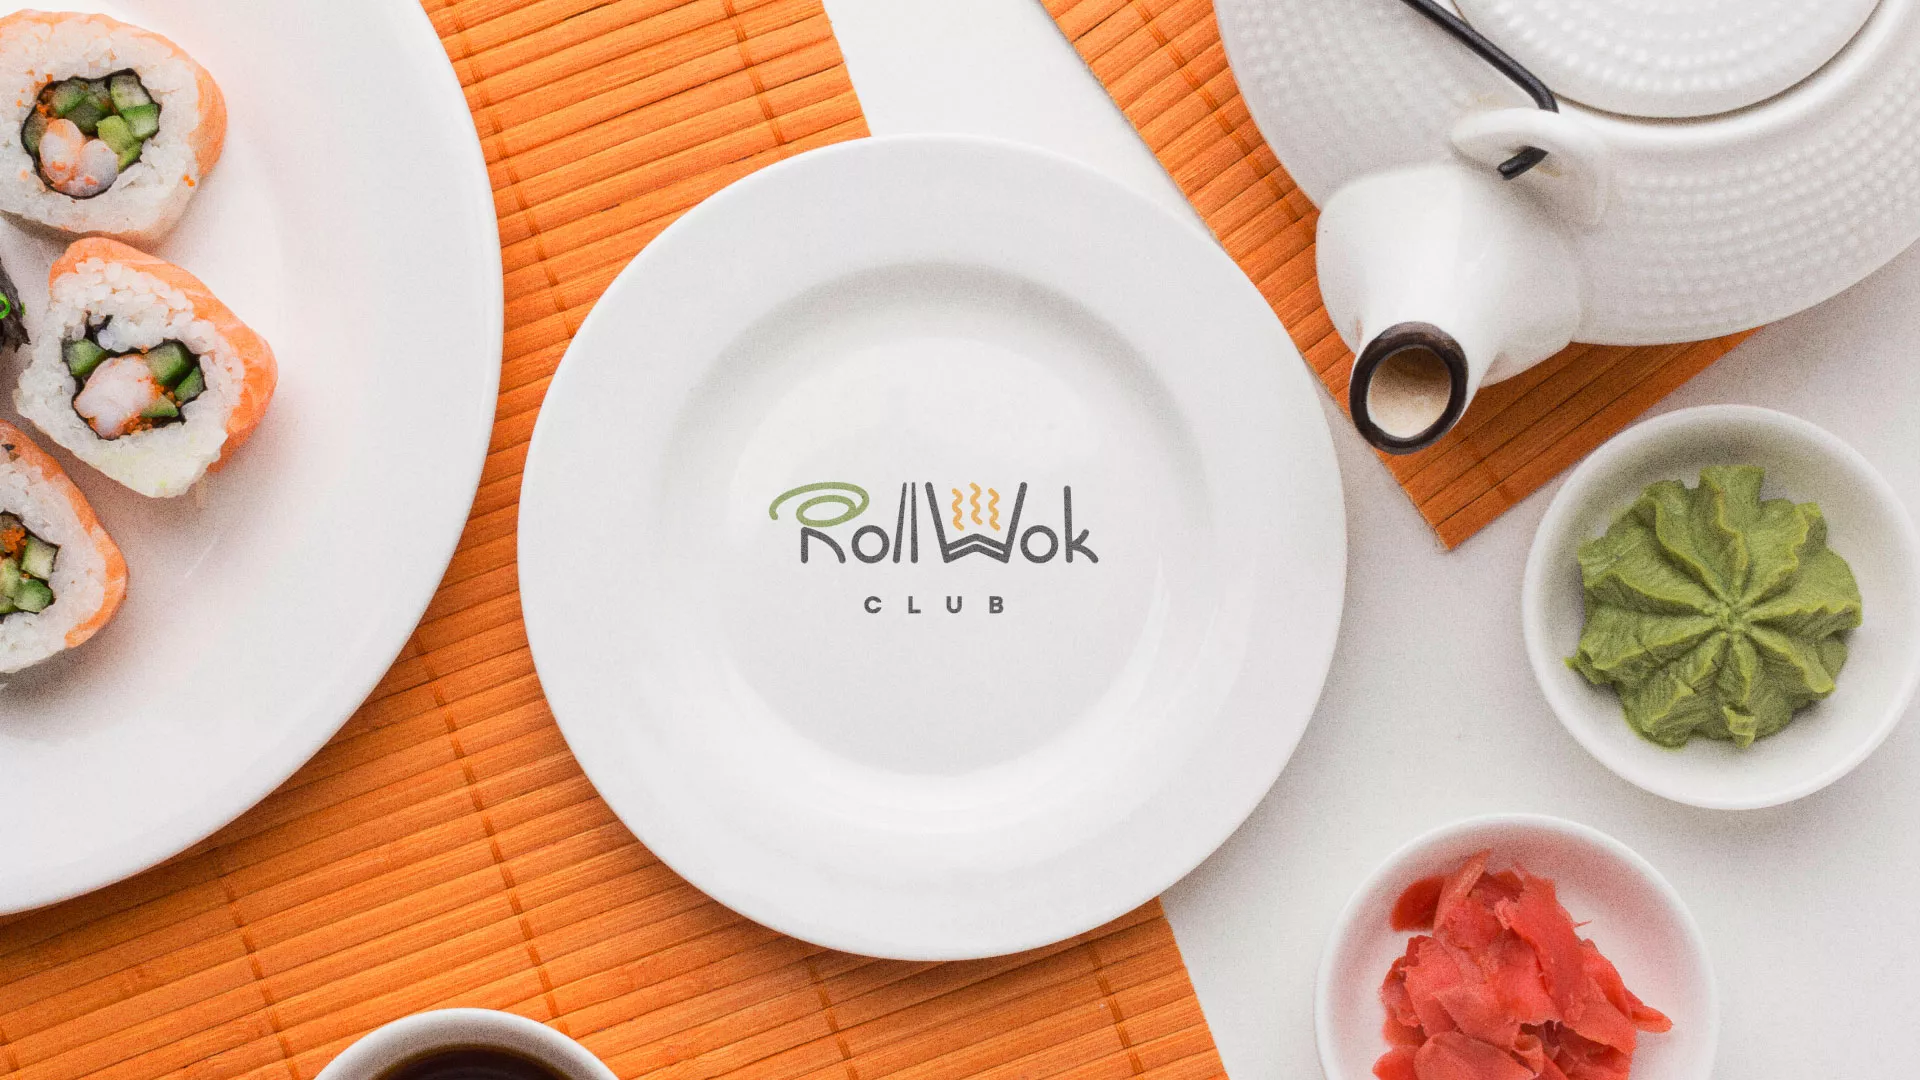 Разработка логотипа и фирменного стиля суши-бара «Roll Wok Club» в Благовещенске